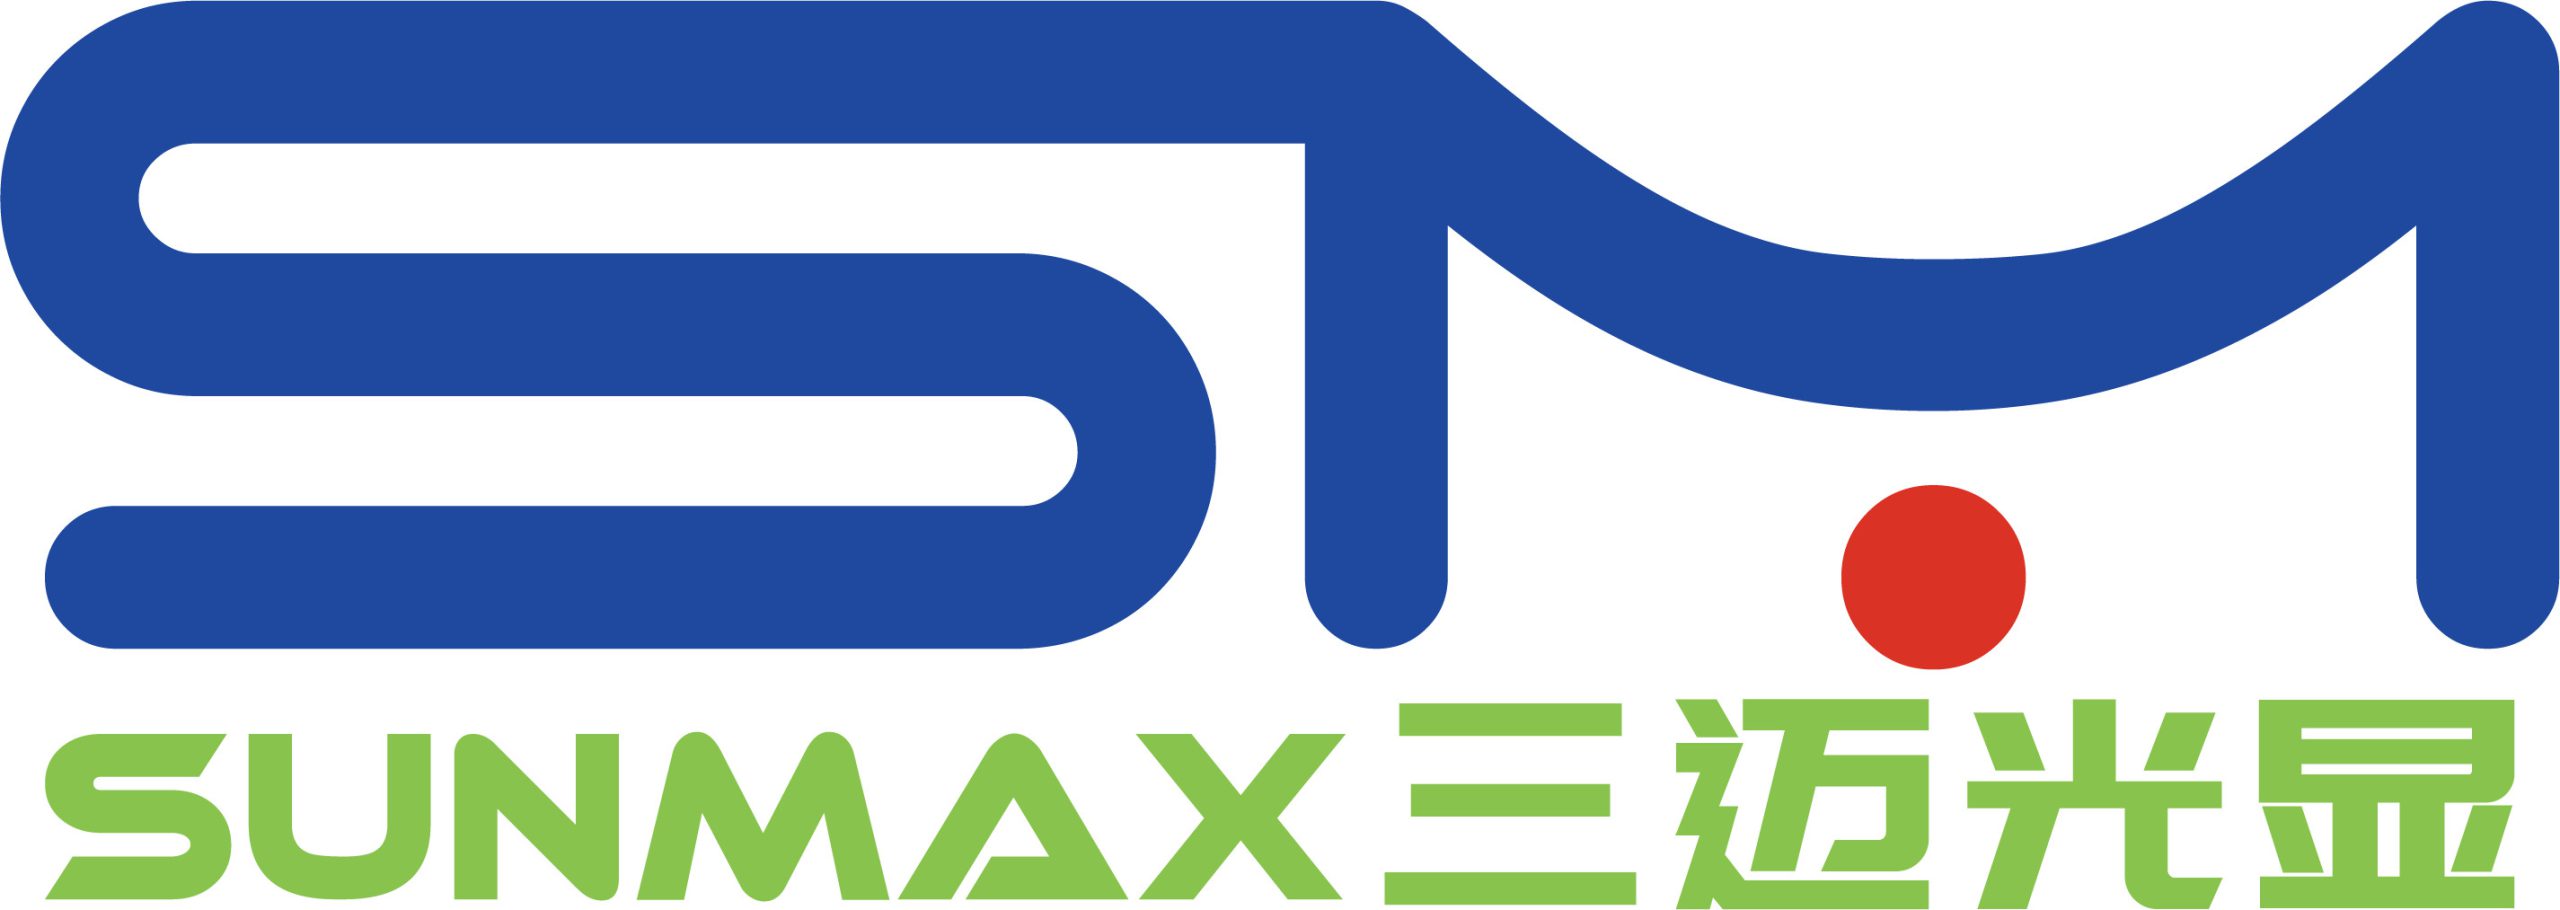 Logo công ty Sunmax LED khẳng định giá trị bền vững - lâu dài 